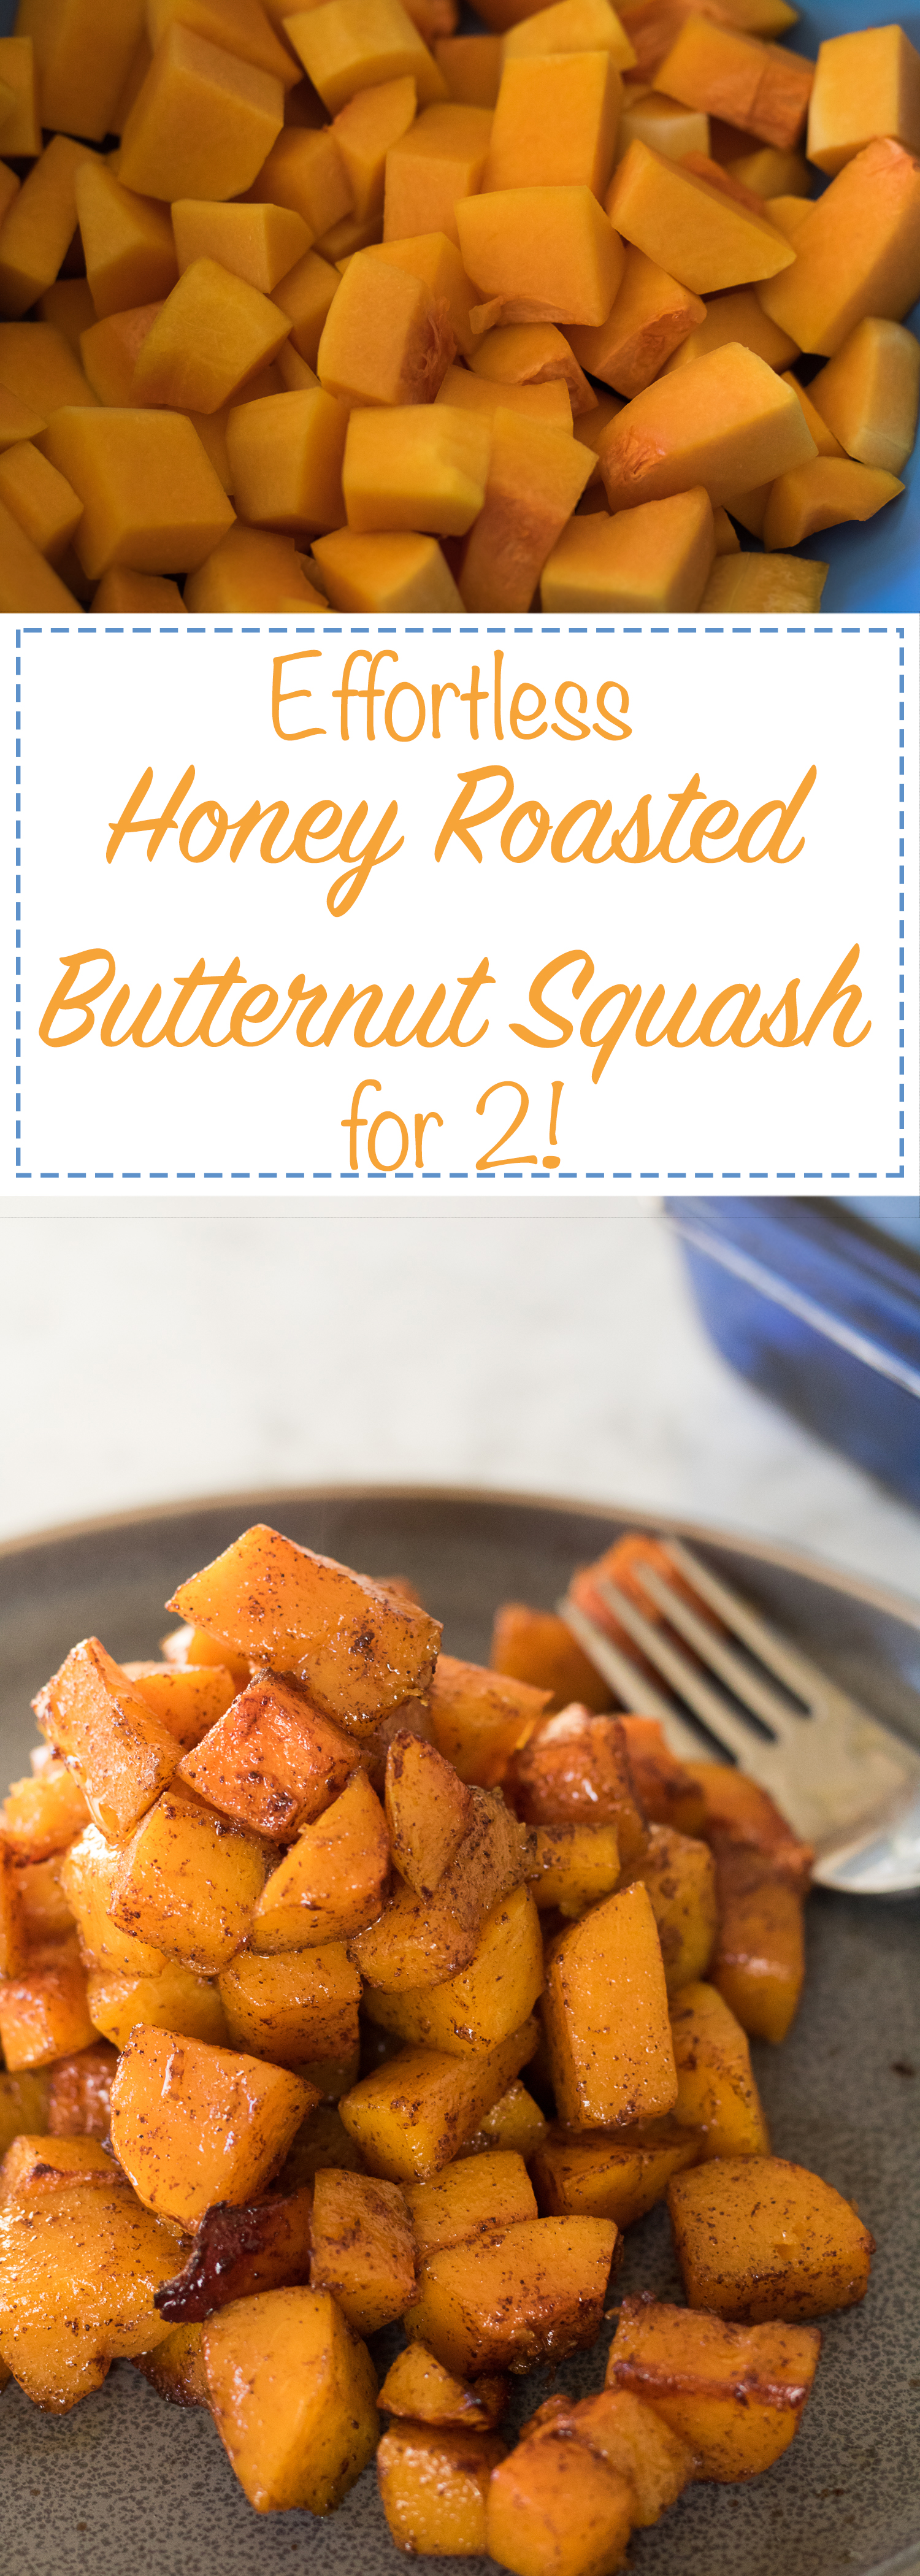 effortless honey roasted butternut squash for 2!